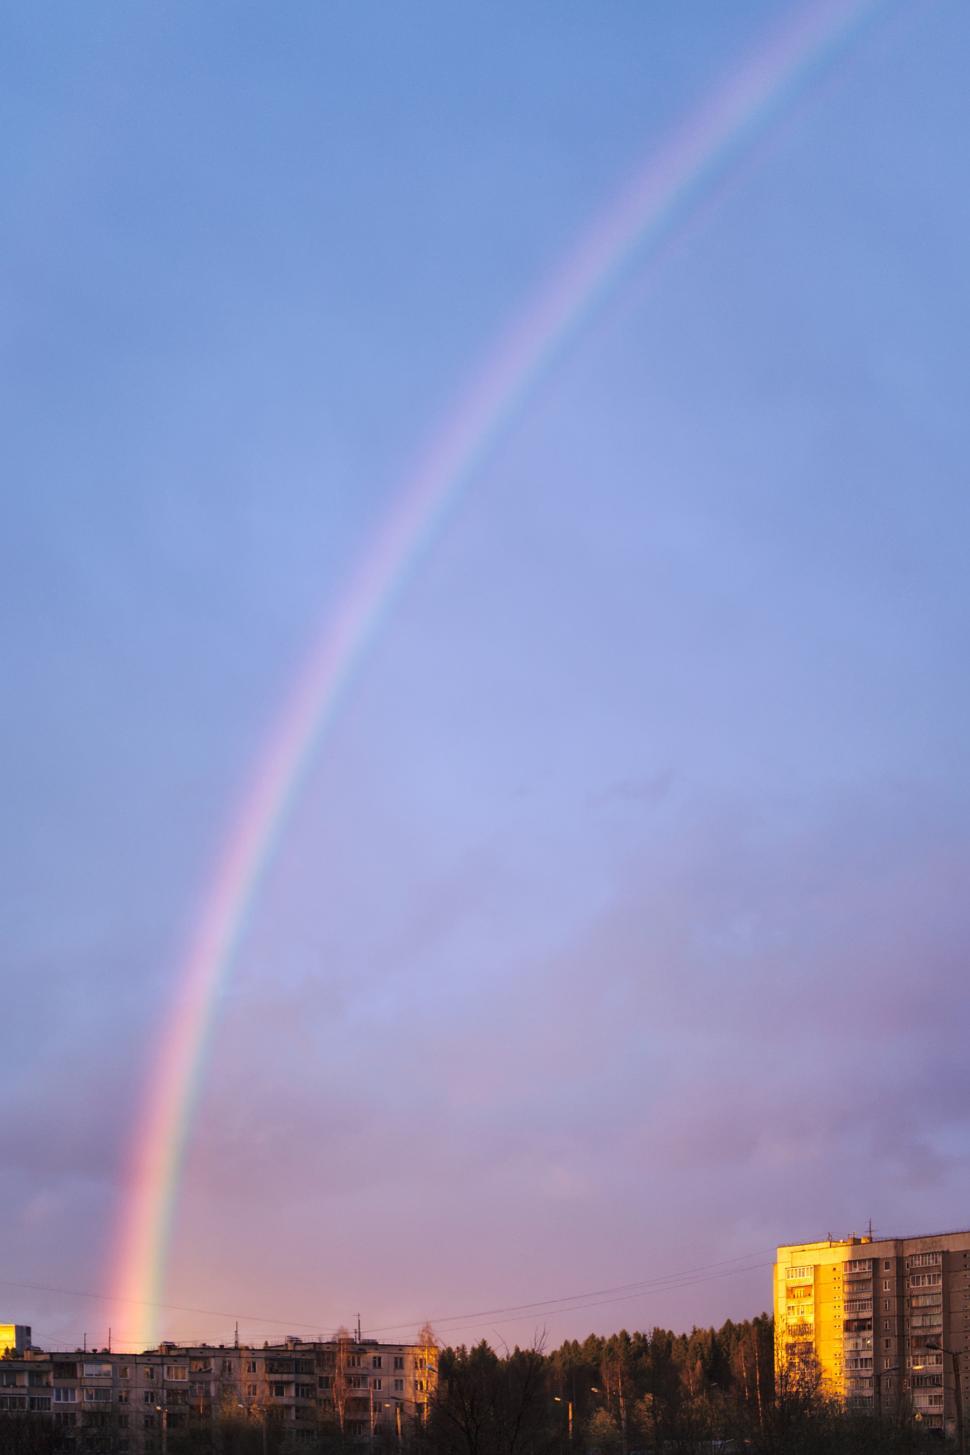 Free Image of Evening rainbow 